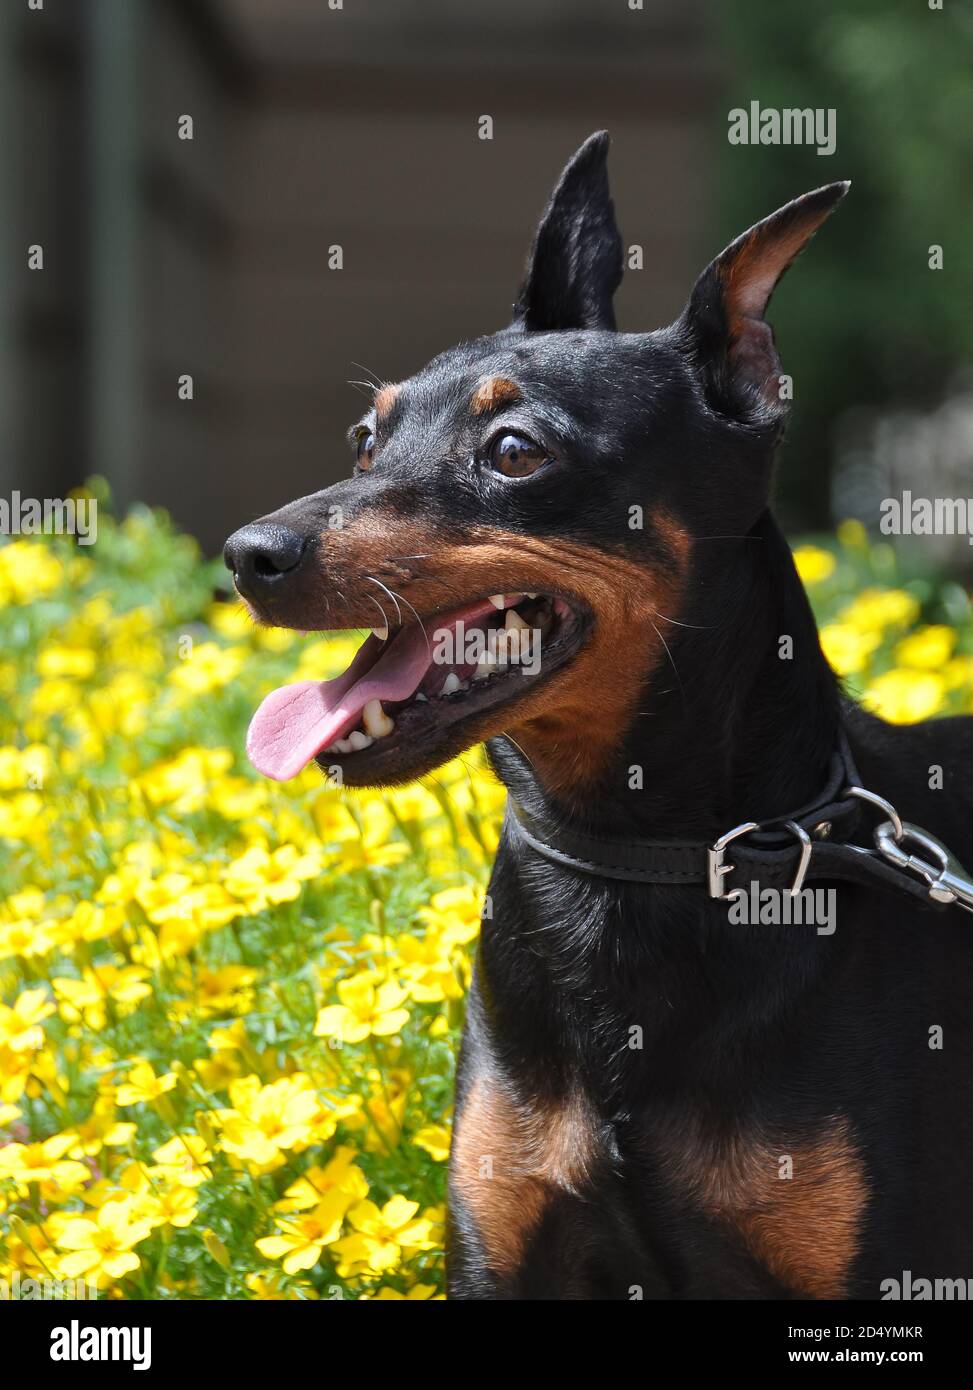 Black and brown tan miniature pinscher dog closeup Stock Photo